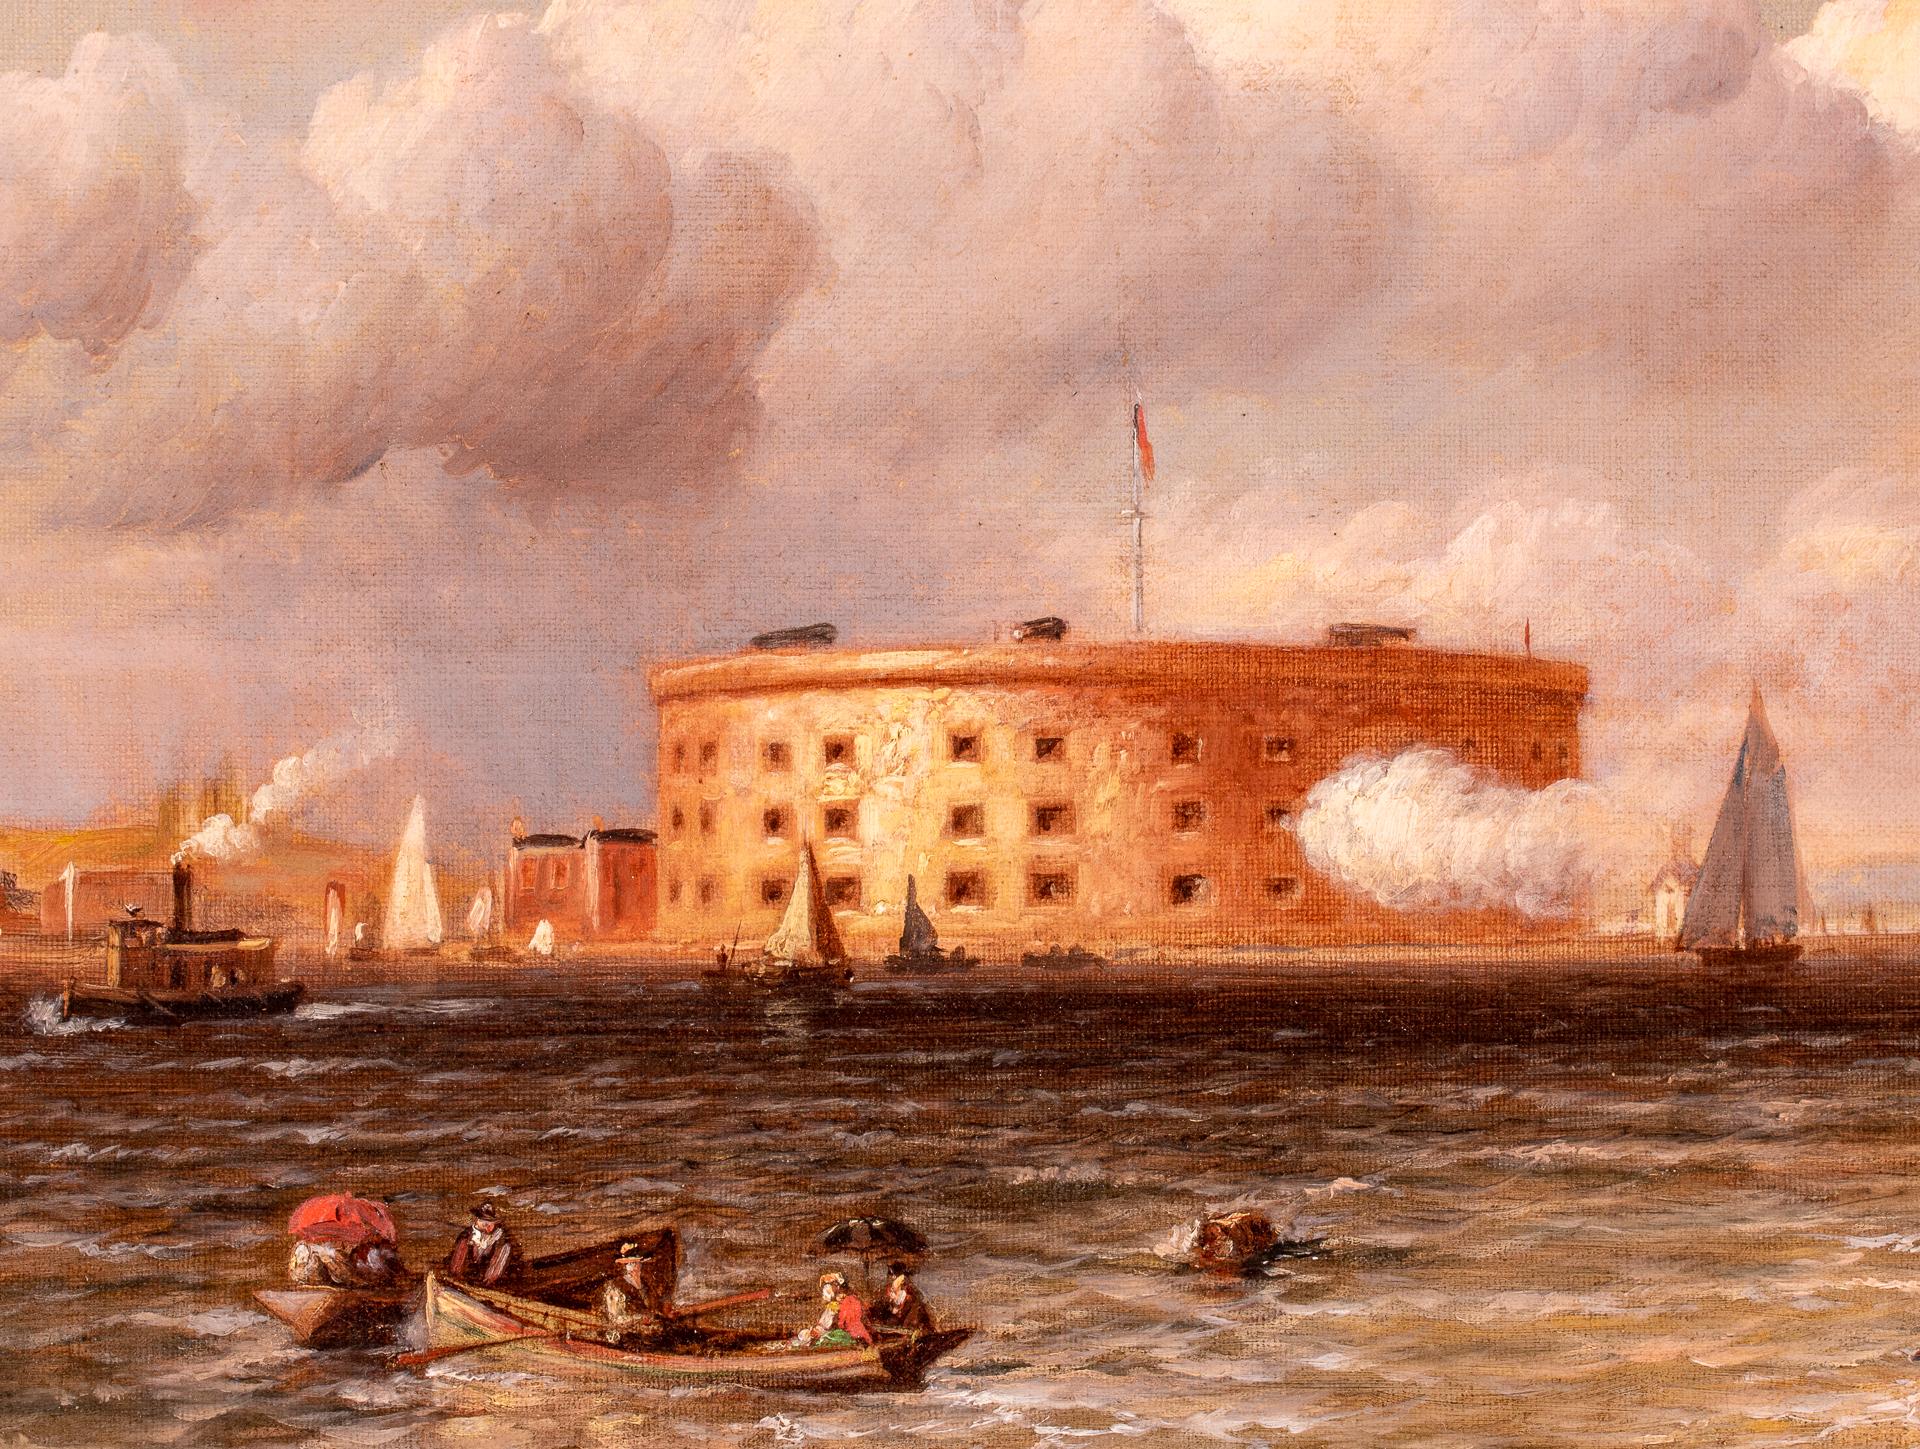 Maritime Gemälde aus dem späten 19. Jahrhundert geben oft einen guten Einblick in den massiven Wandel, der sich in dieser Zeit im Schiffbau vollzog: das Ende der Segelschiffe als Handels- und Kriegsmächte und der Beginn von Stahlrümpfen und